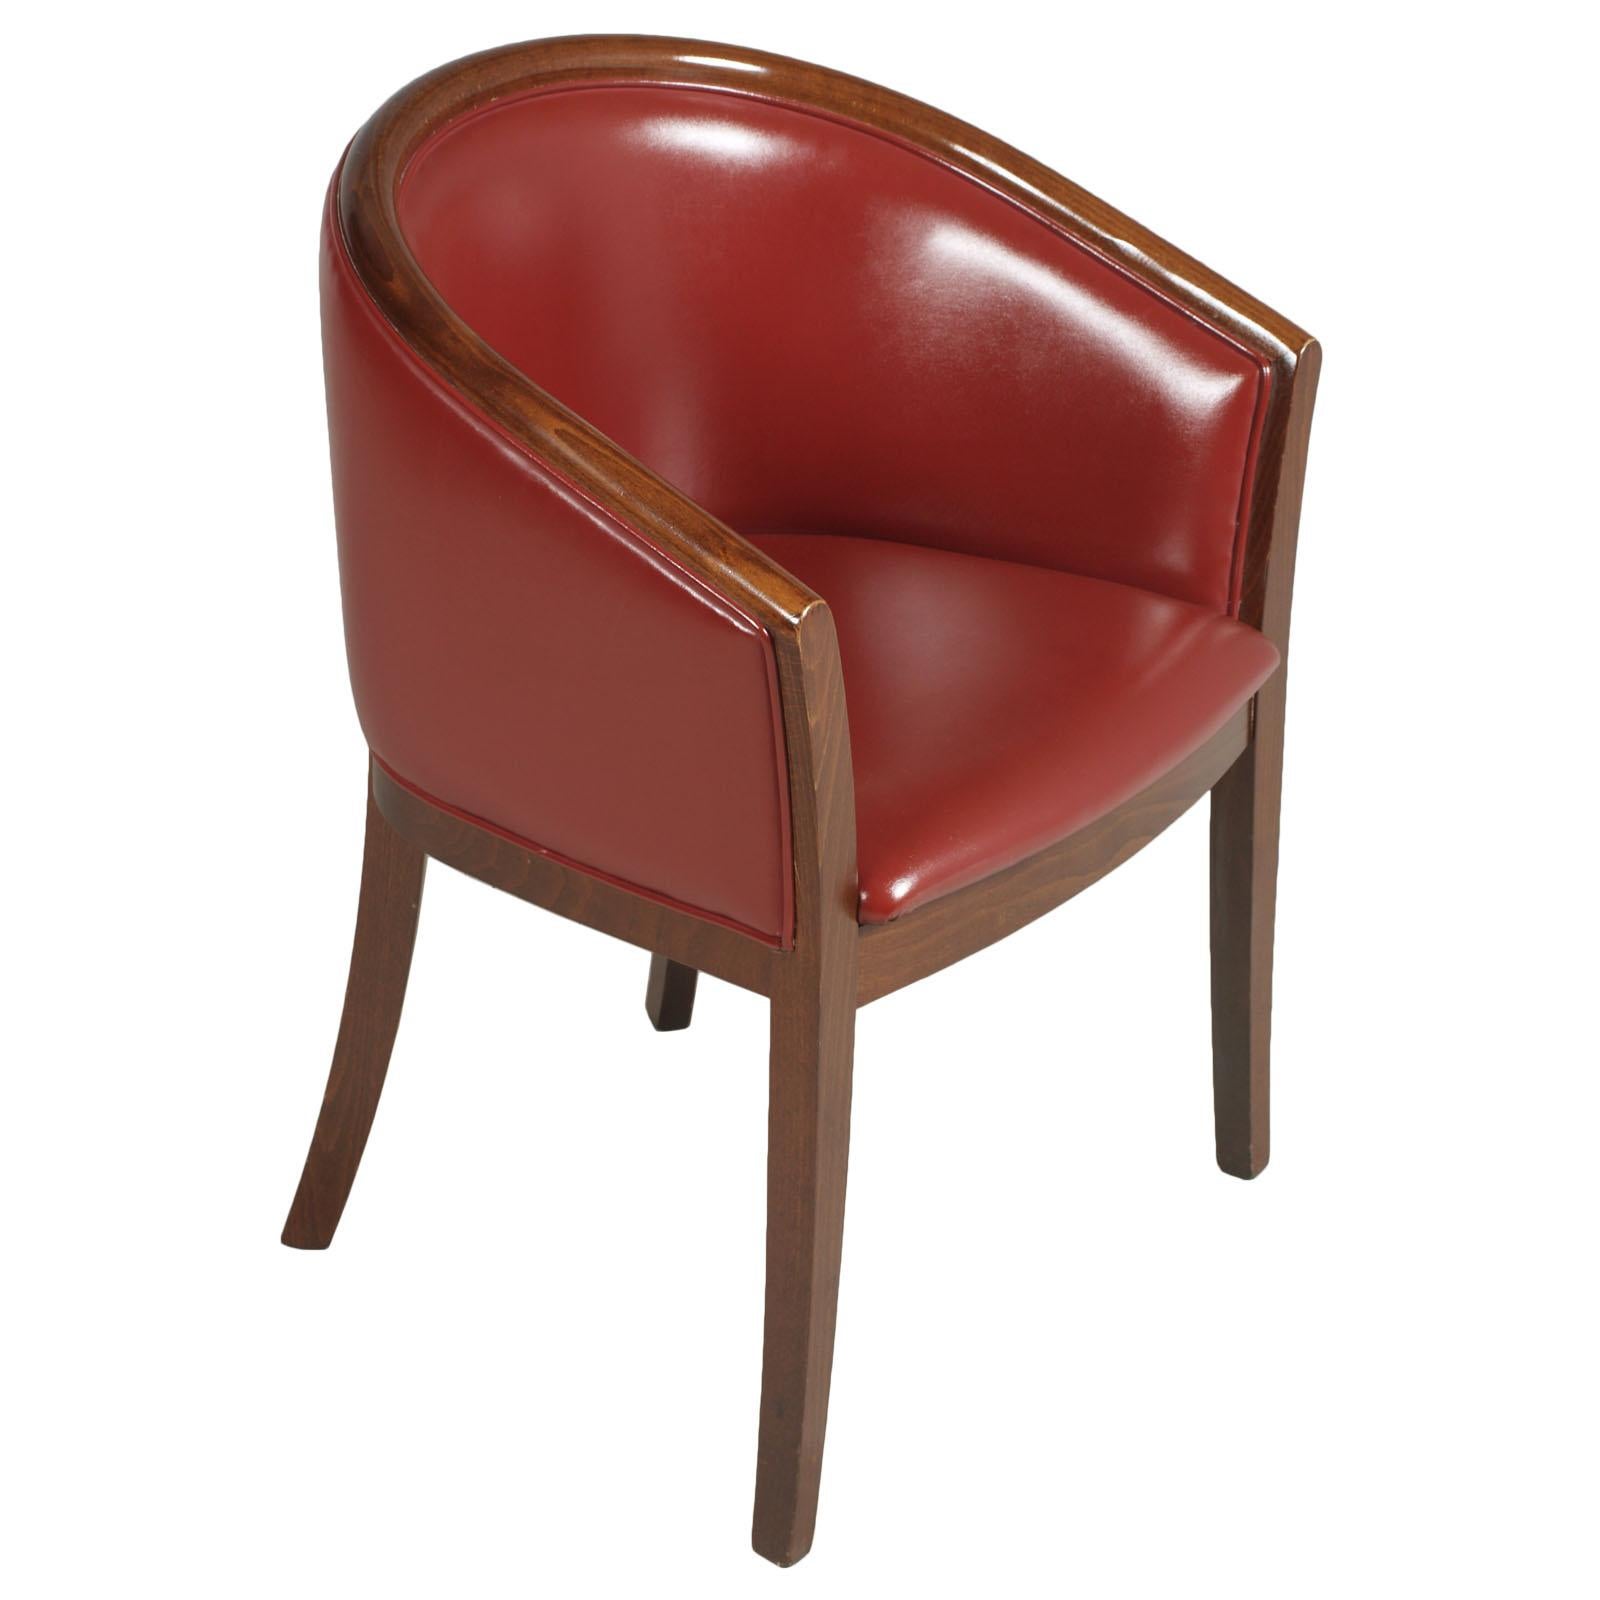 Chaises de salon italiennes des années 1930, fauteuils, Art Deco, restaurées, nouvelle sellerie en cuir rouge bordeaux, noyer ciré style Jules Leleu.

Ces fauteuils rouges classiques sont dotés d'un dossier et d'une assise rembourrés. Le siège est